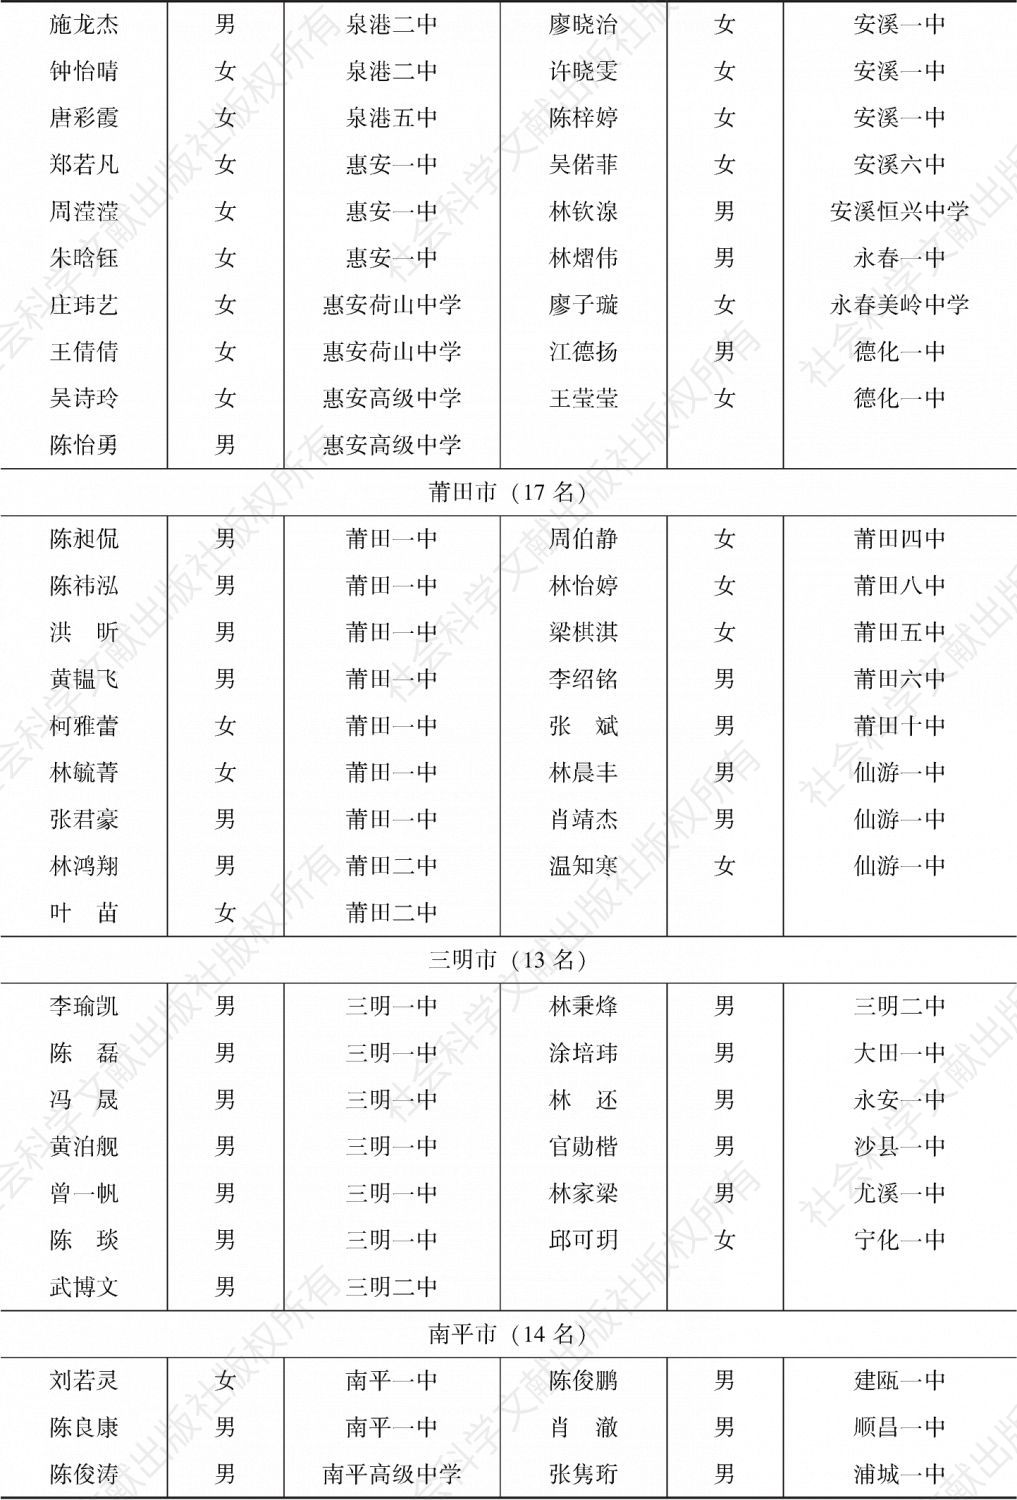 “庄采芳·庄重文奖学金”2018年获奖学生名单-续表2